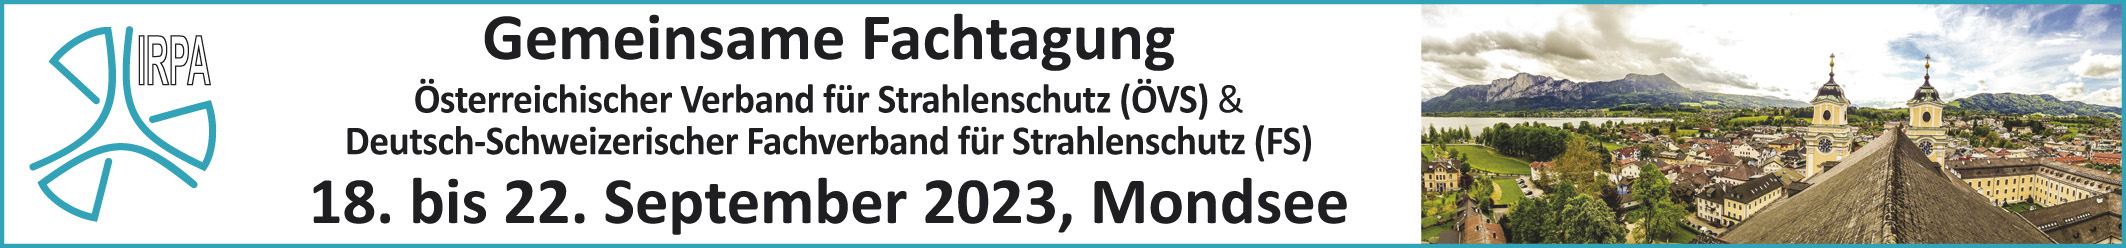 Gemeinsame Jahrestagung des Österr. Verbandes für Strahlenschutz (ÖVS) und Deutsch-Schweizerischer Fachverband f. Strahlenschutz e.V (FS)